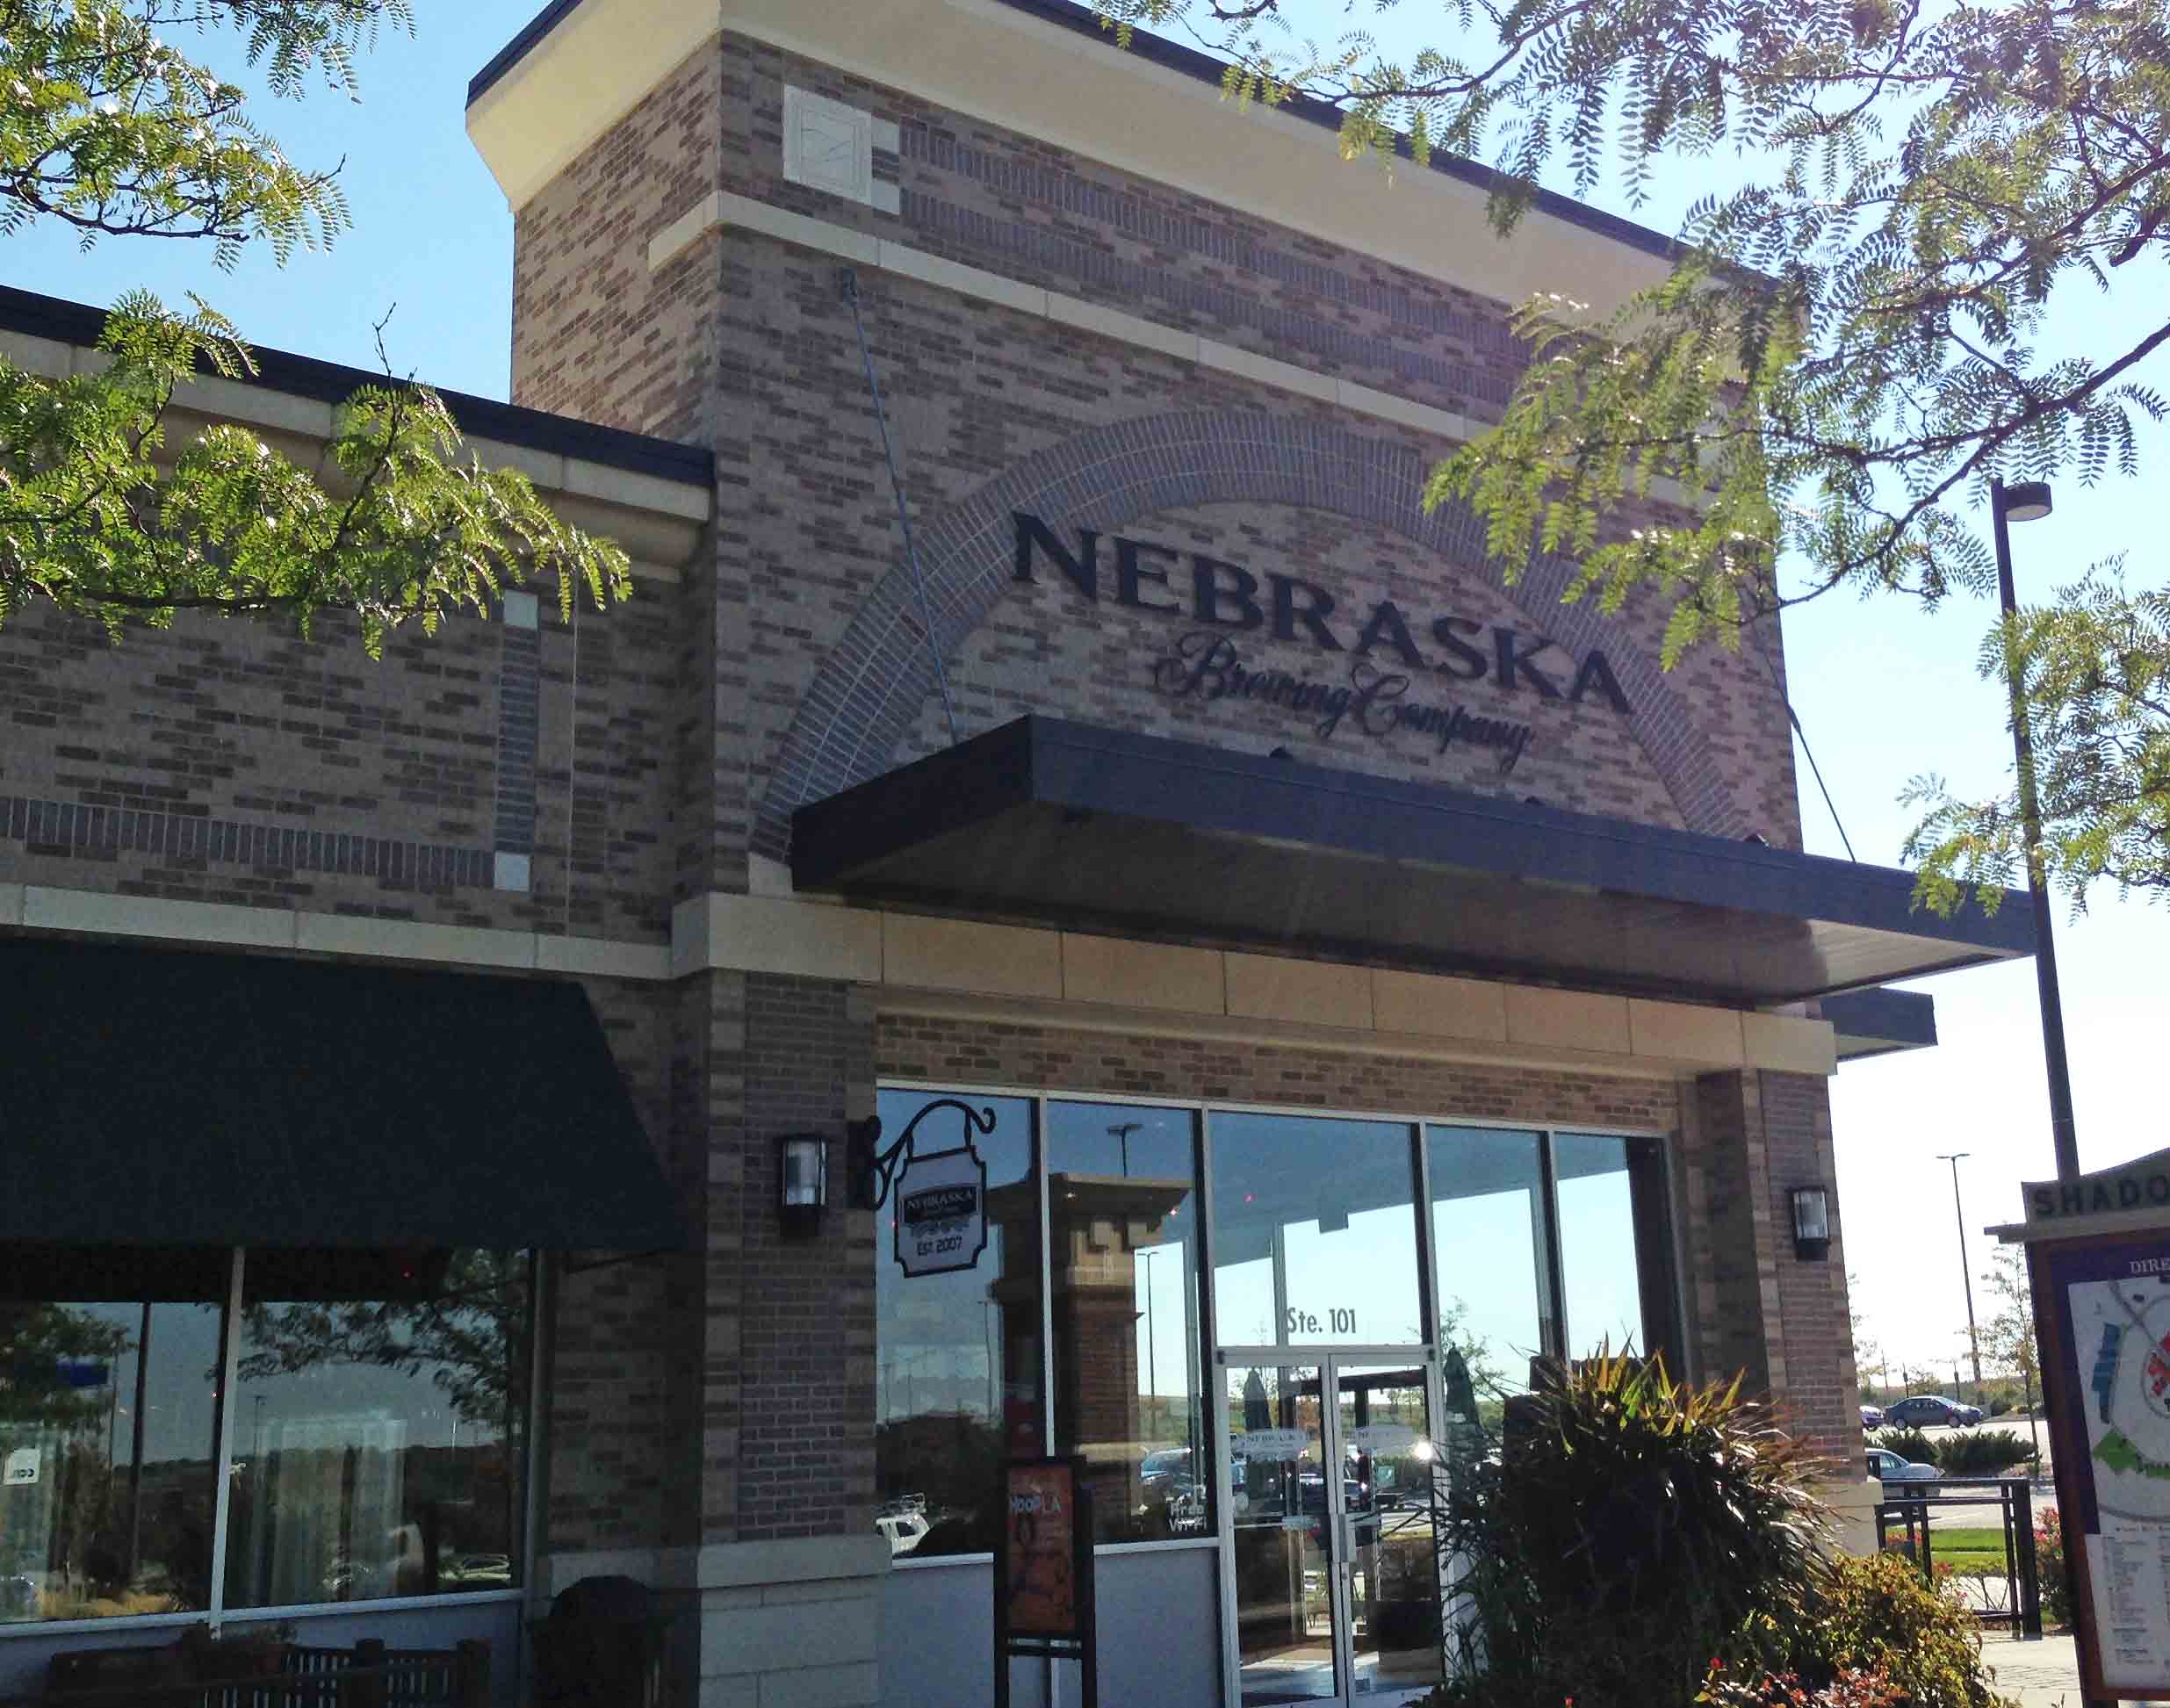 173. Nebraska Brewing Co, Papillion NE 2013